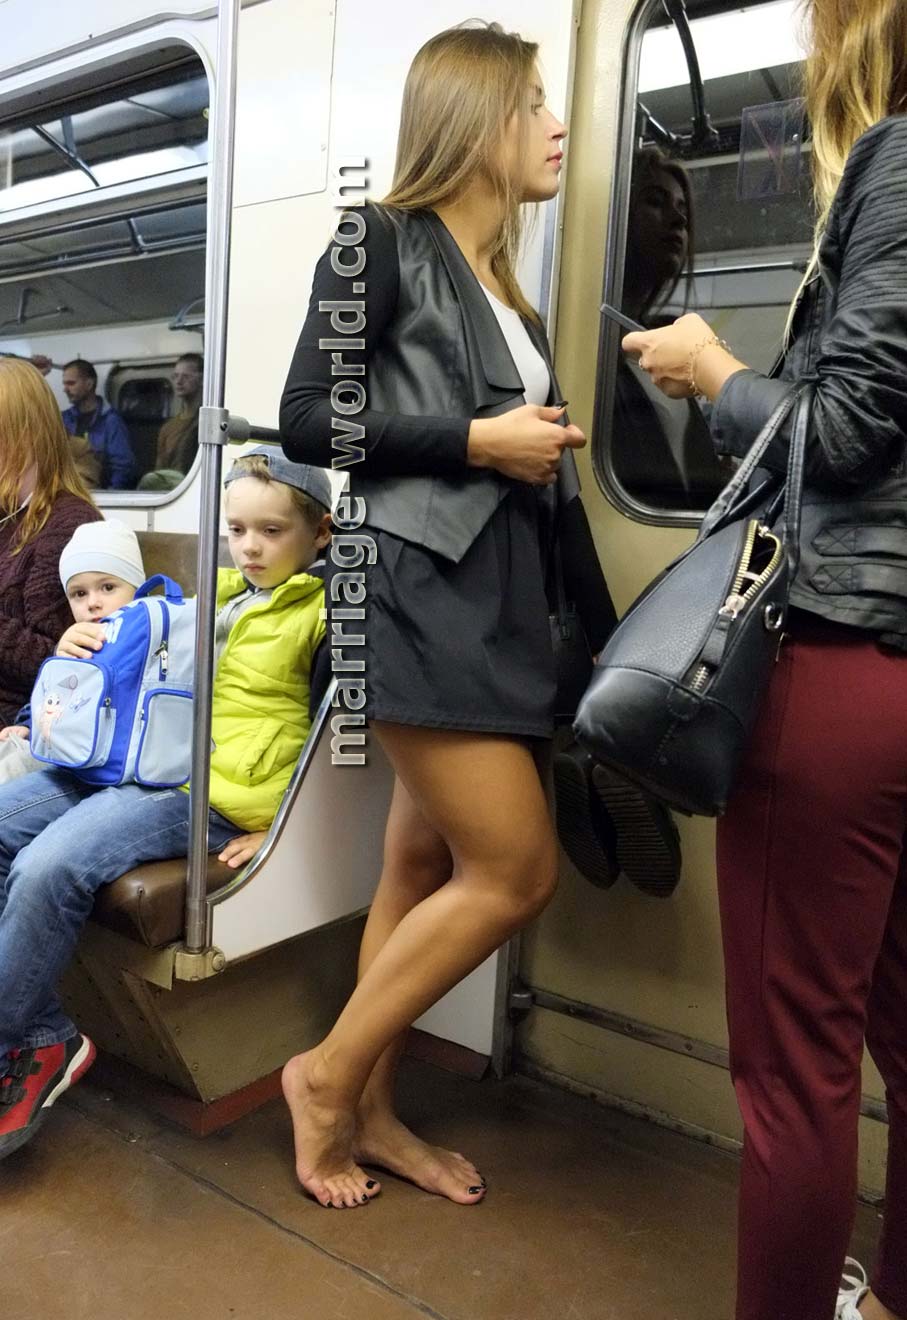 Девушка в белых трусиках попалась на камеру в метро